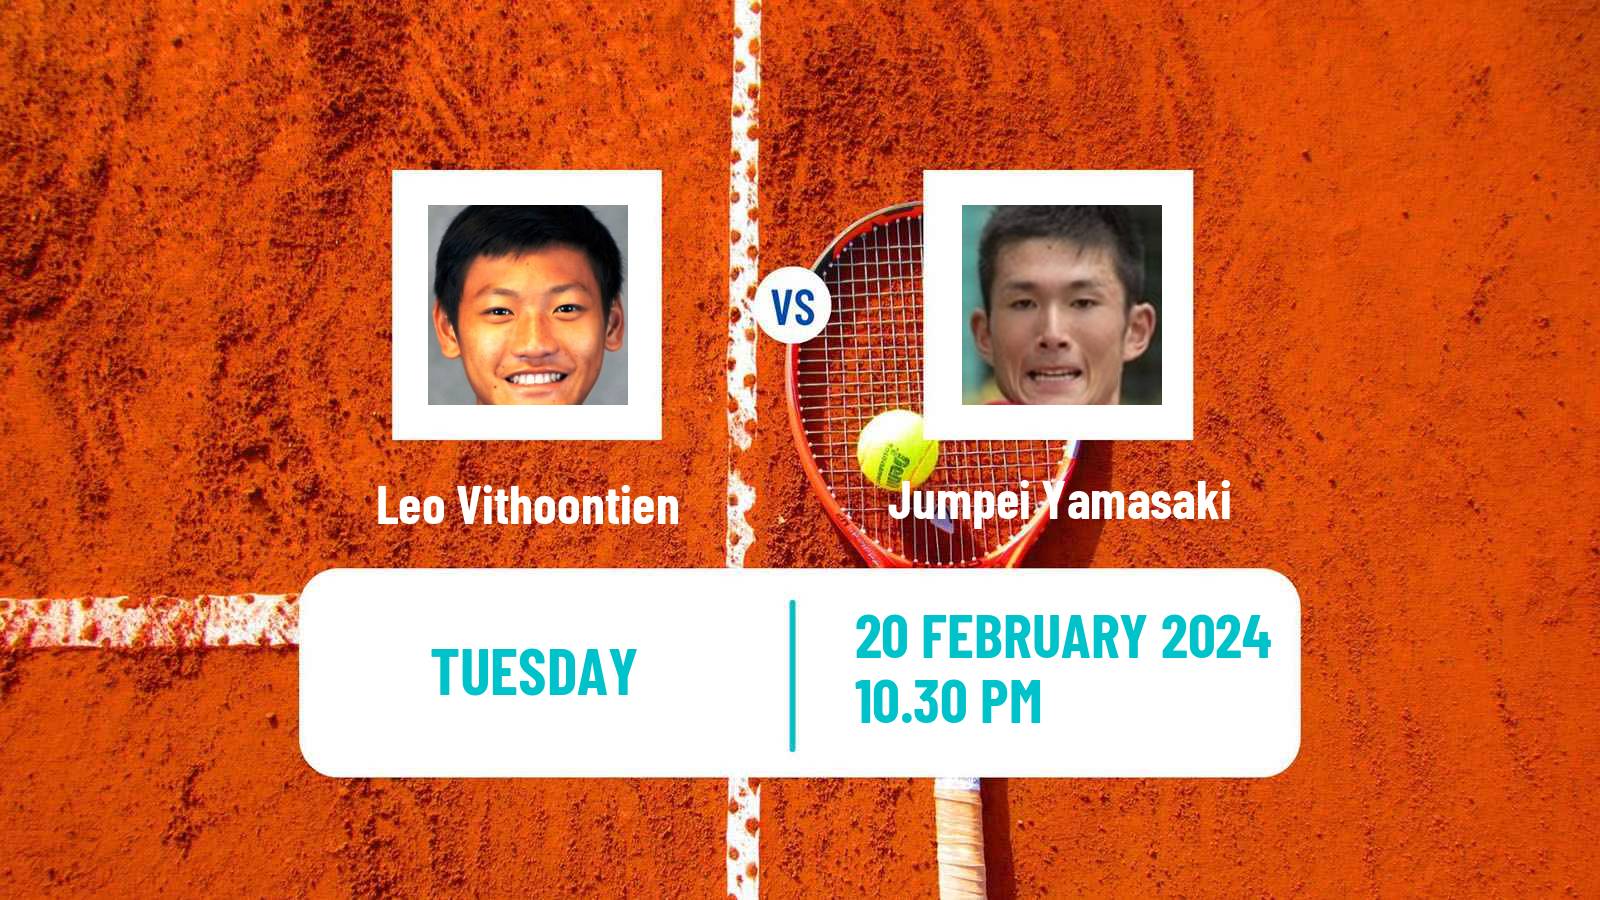 Tennis ITF M15 Nakhon Si Thammarat 2 Men Leo Vithoontien - Jumpei Yamasaki